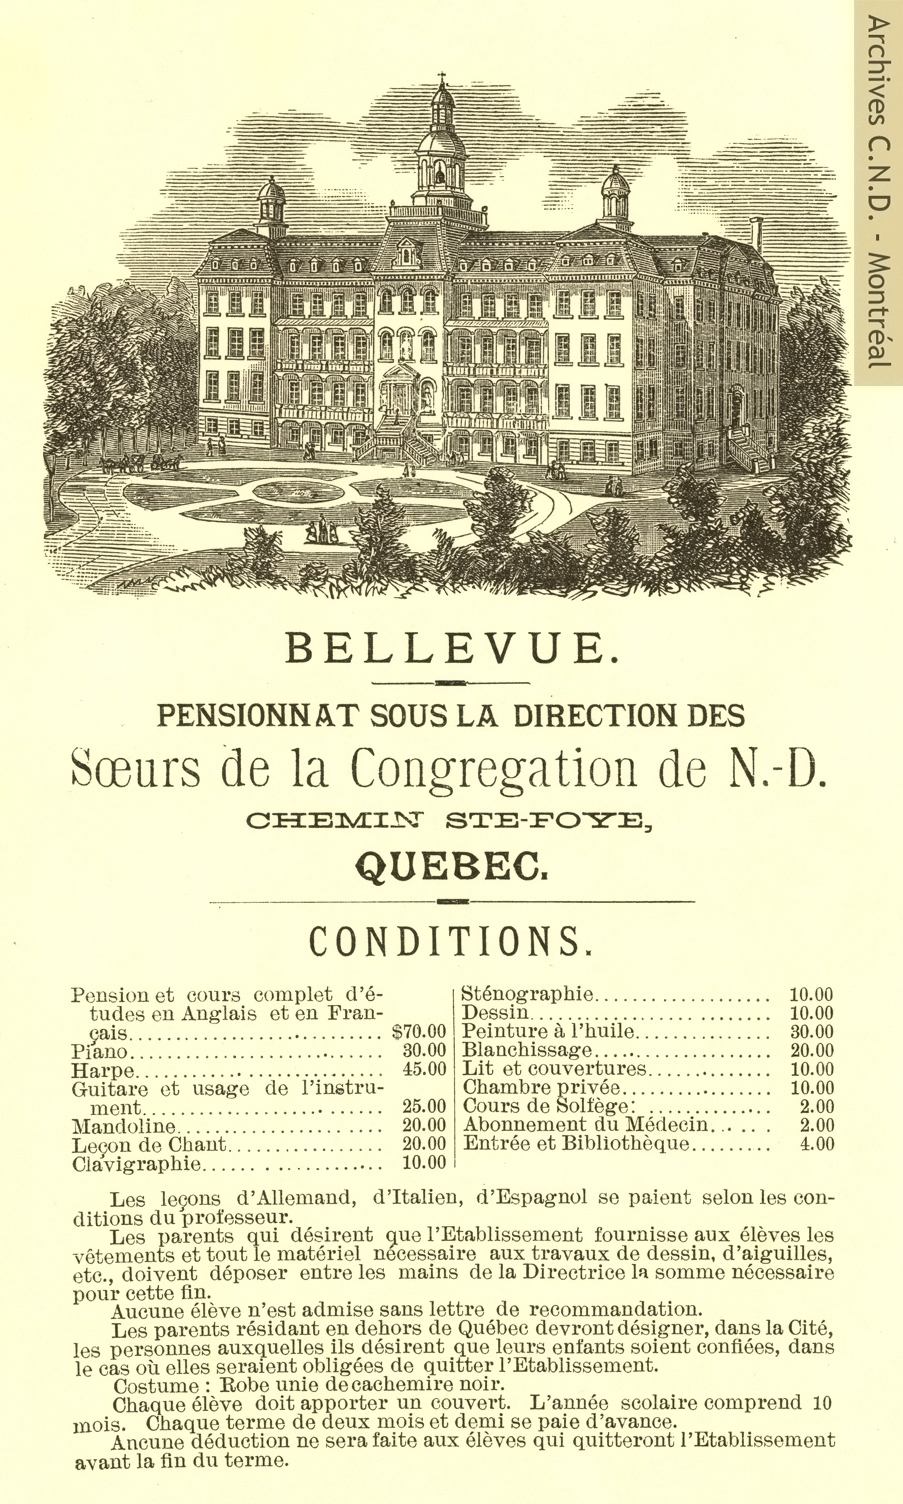 Prospecto del Internado Notre-Dame-de-Bellevue